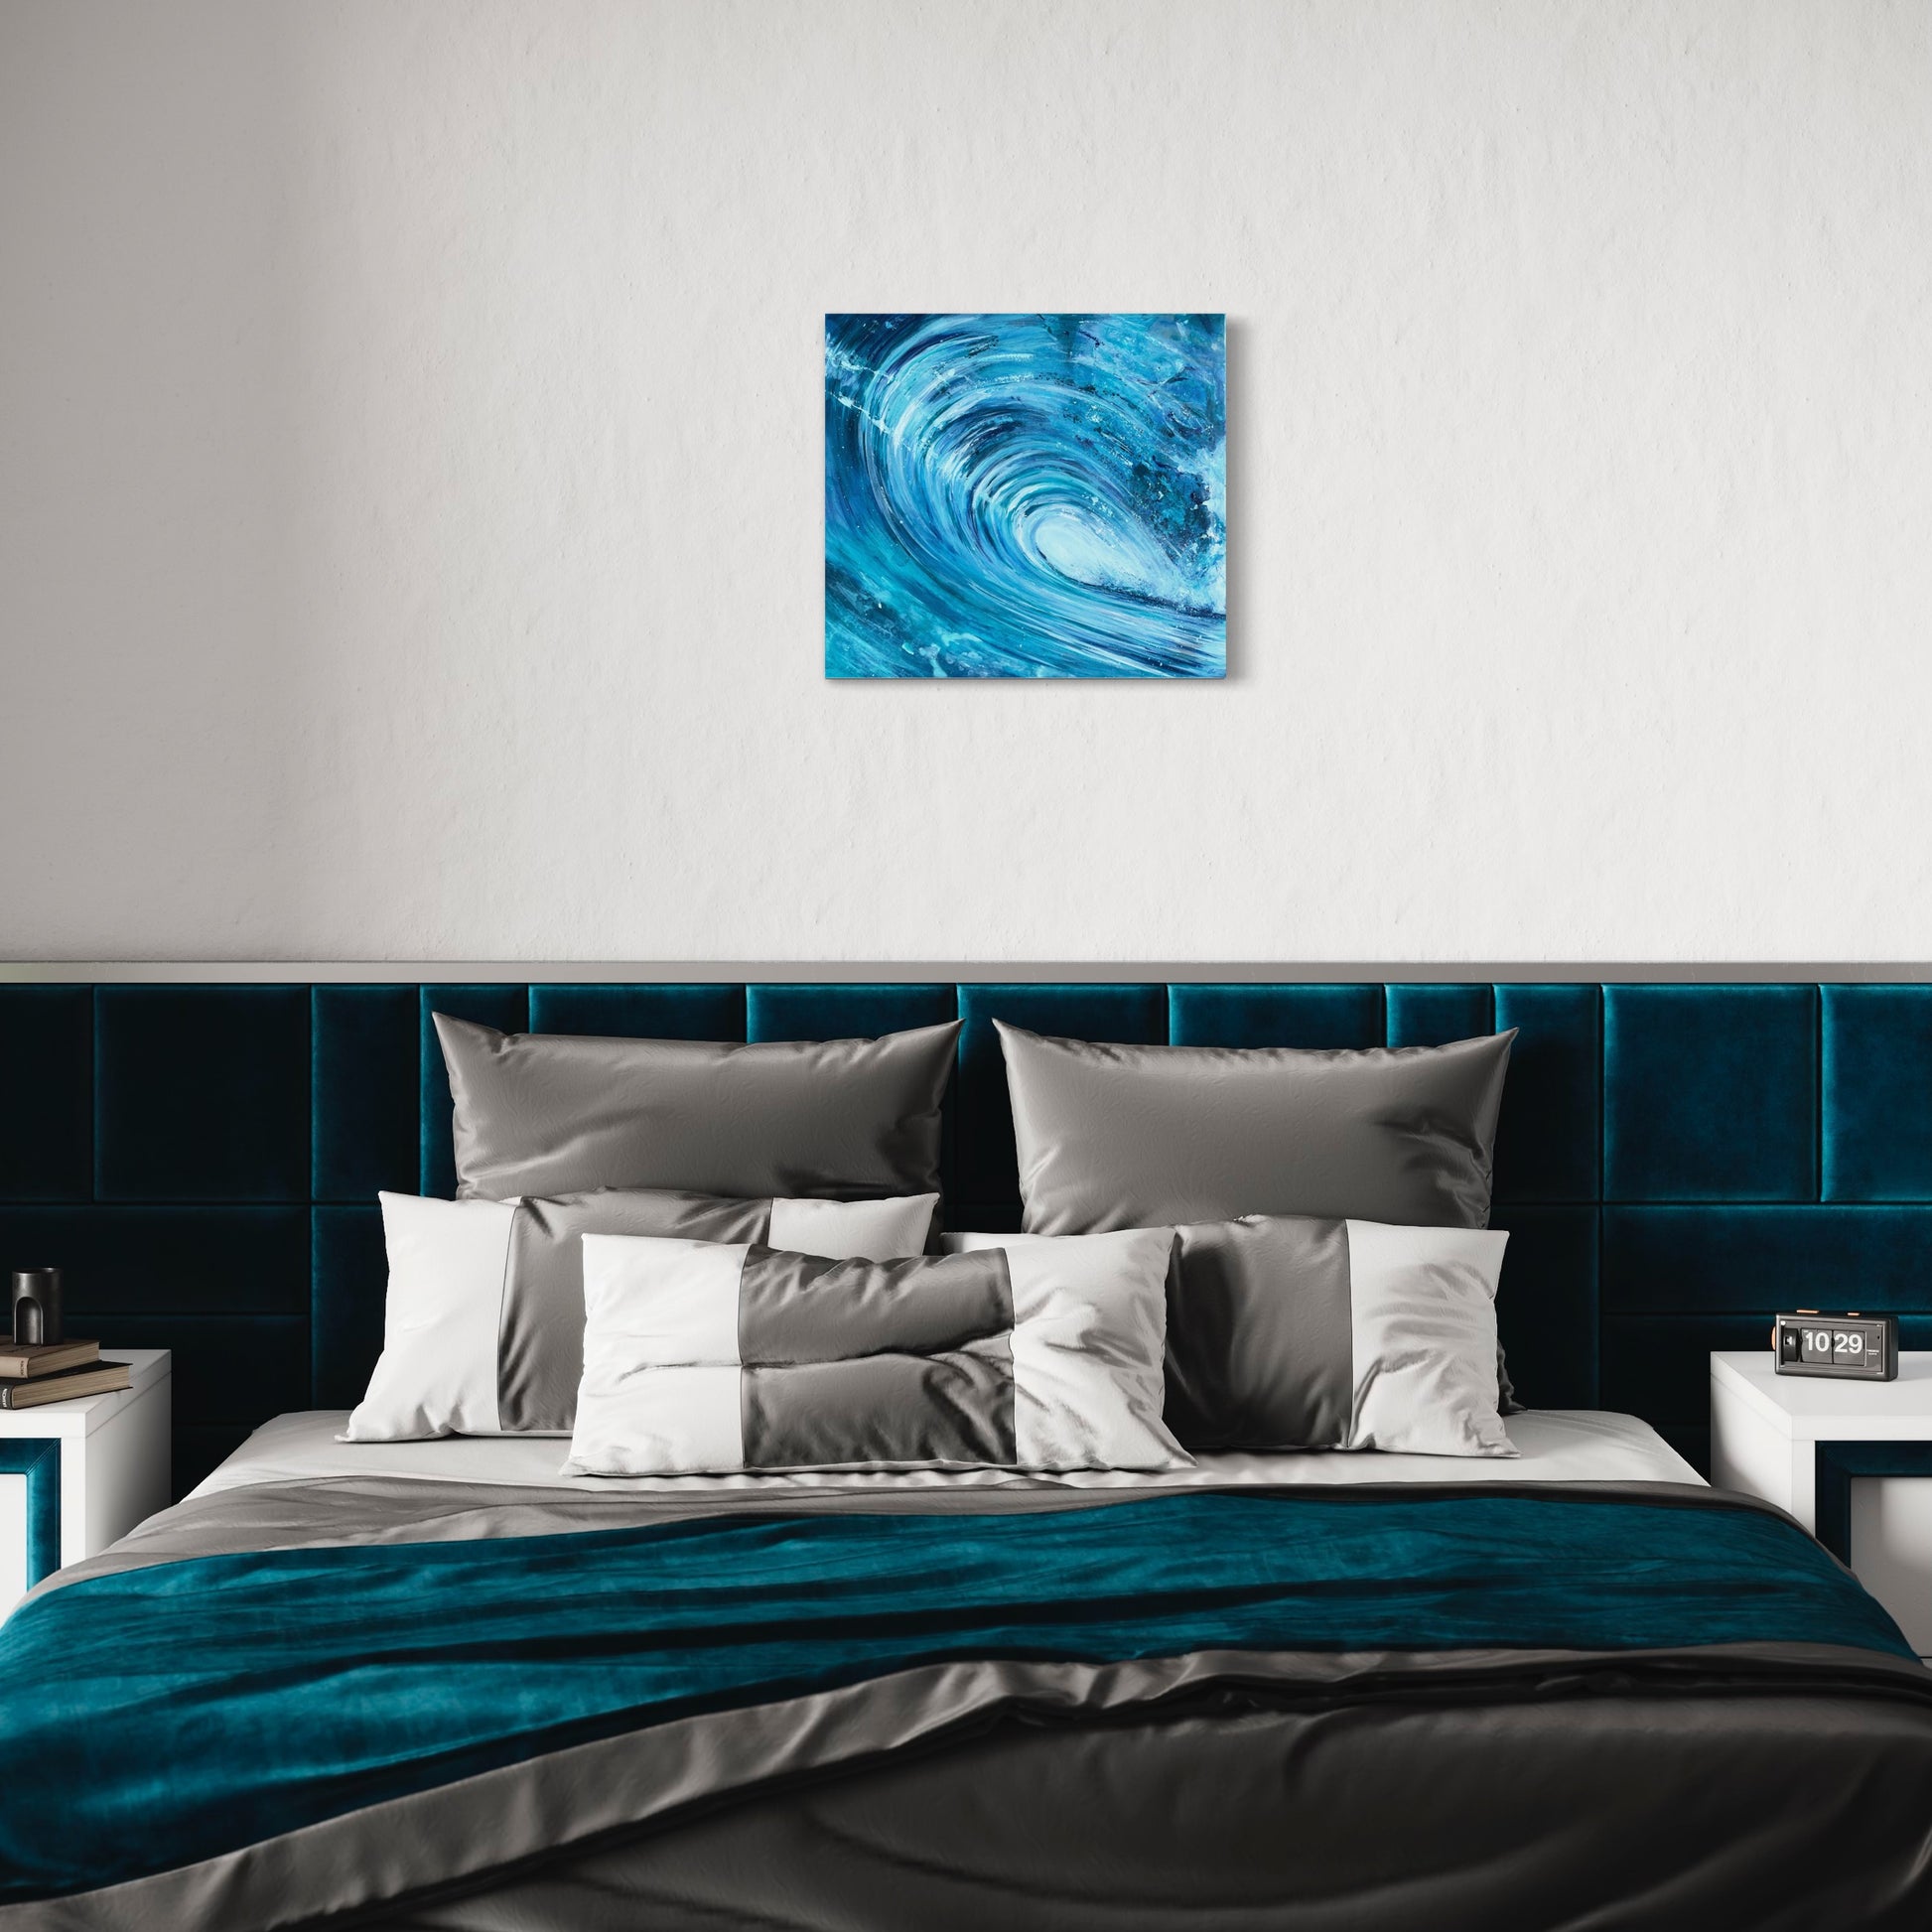 Original Barrel Wave art in a bedroom setting